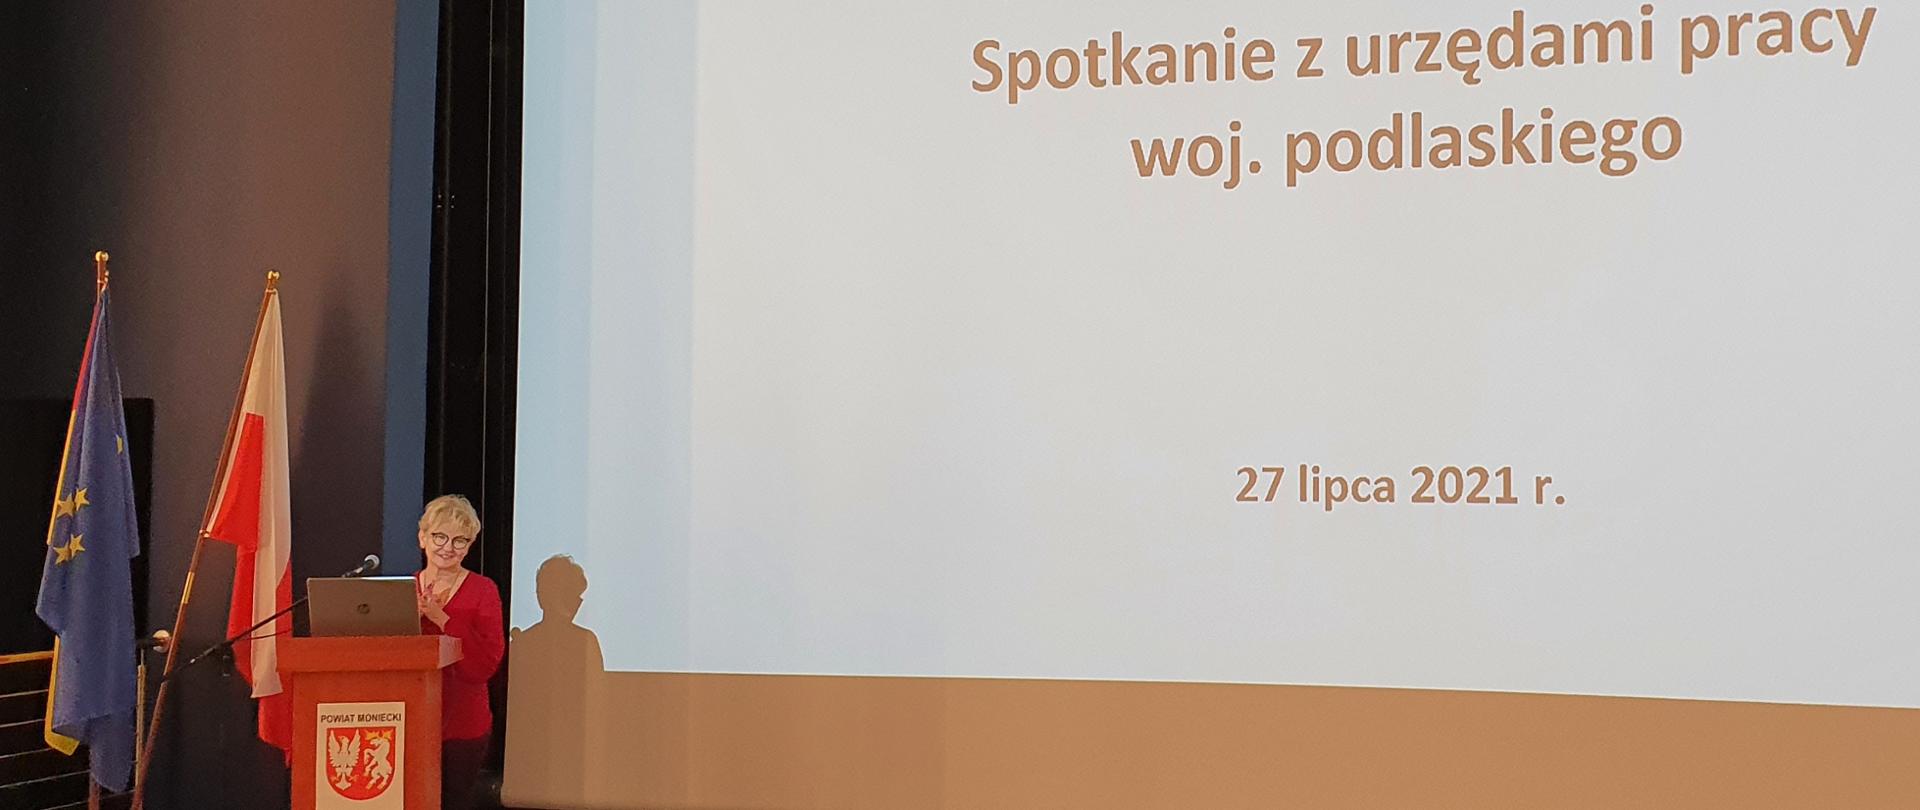 Wiceminister Iwona Michałek spotkała się z przedstawicielami powiatowych urzędów pracy z województwa podlaskiego 